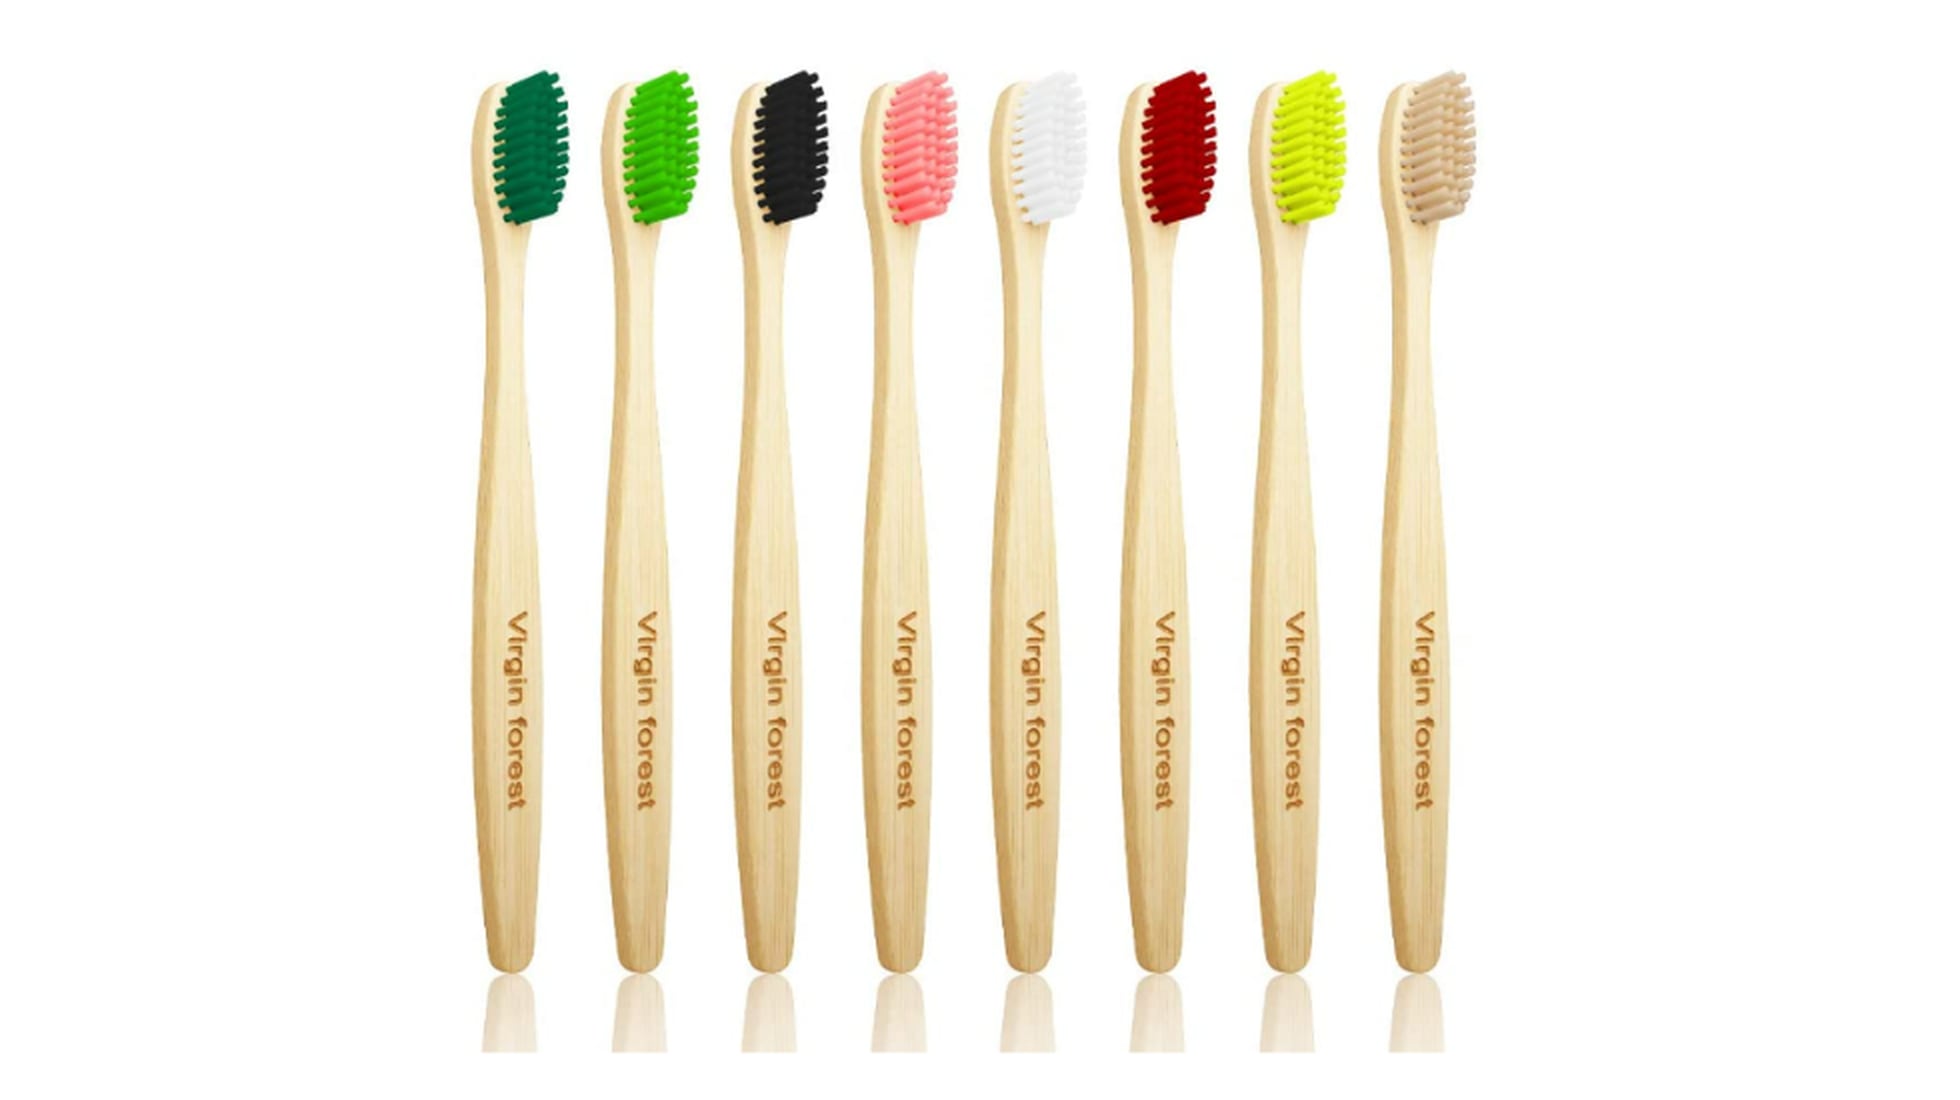 Basura apretón Feudo Los mejores cepillos de dientes de bambú | Escaparate: compras y ofertas |  EL PAÍS